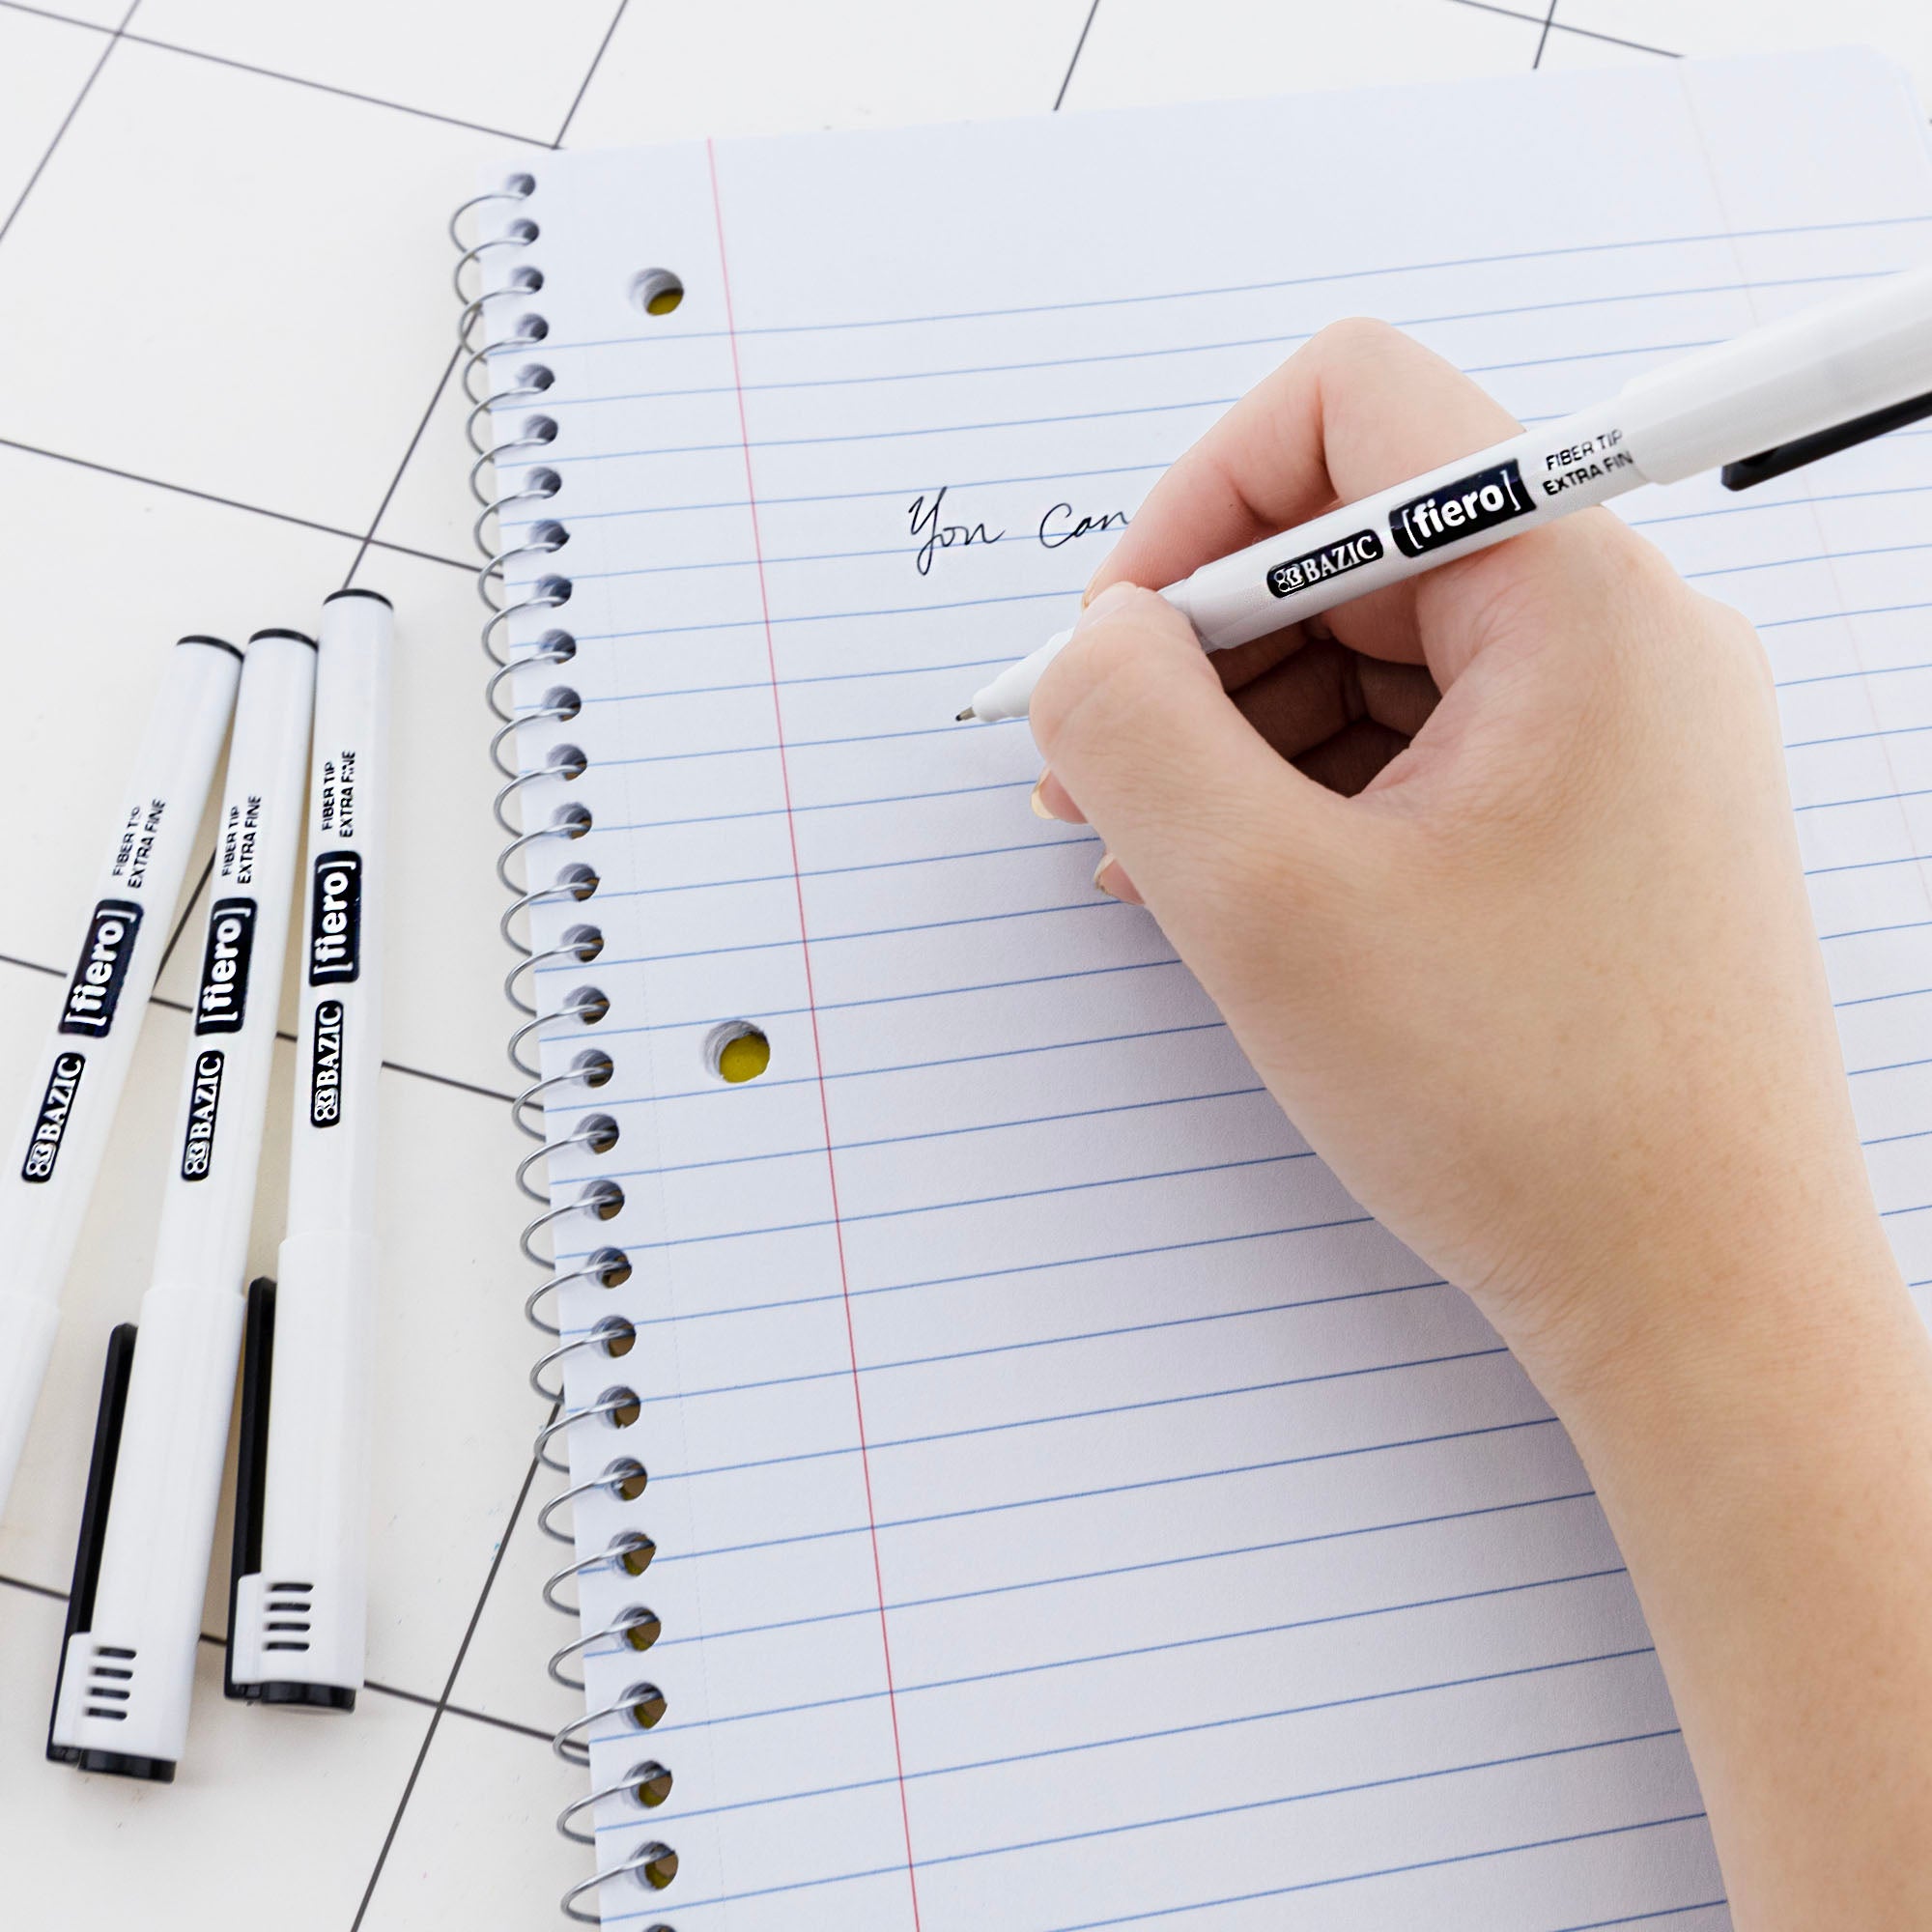 Drawing Pen 01 - Fineliner Marker pen - Extra Fine Tip - Fineliner